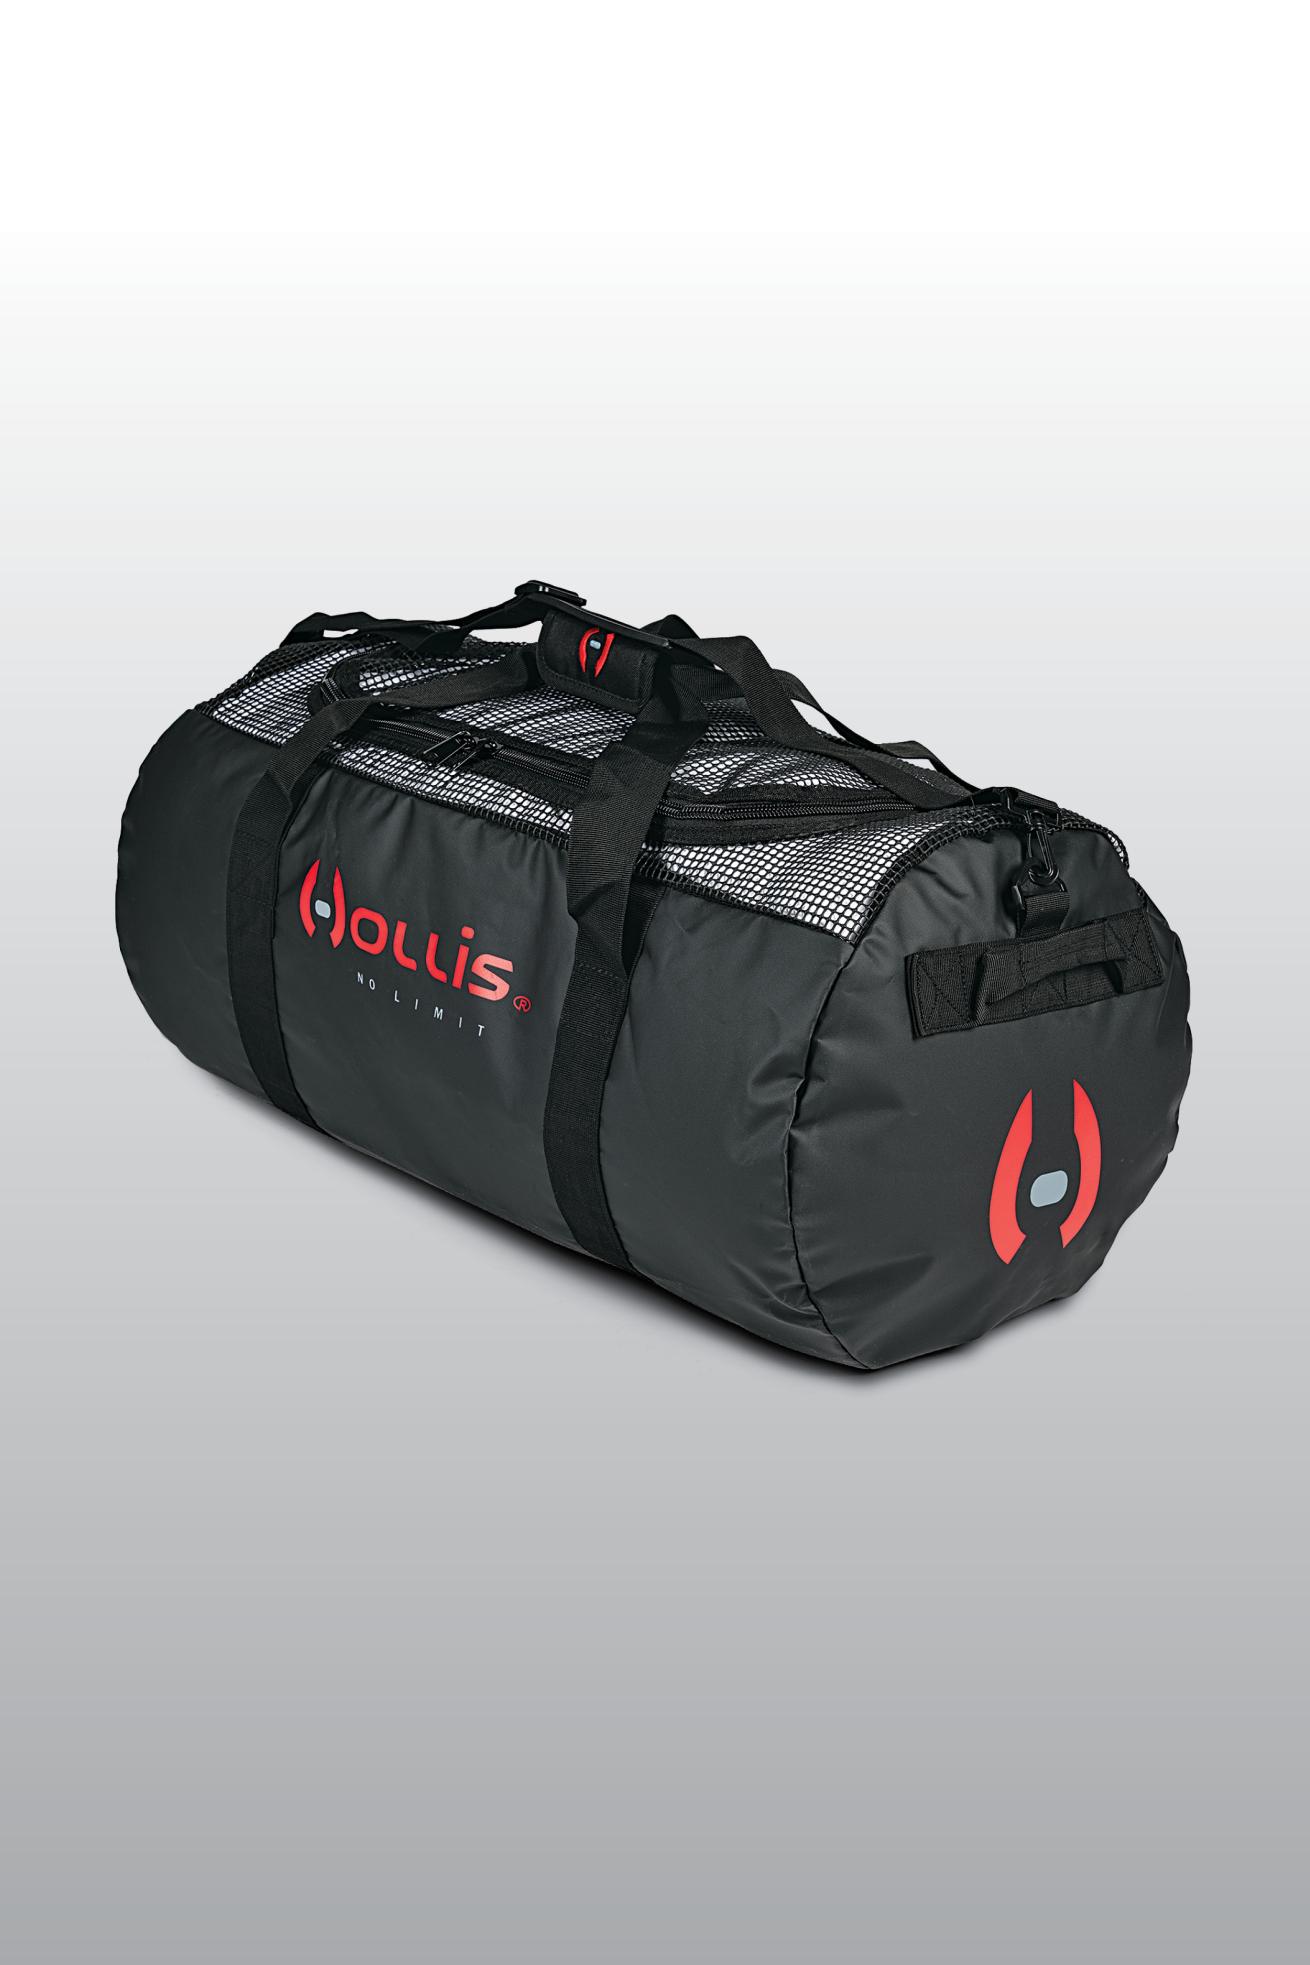 Hollis Mesh Duffel Bag